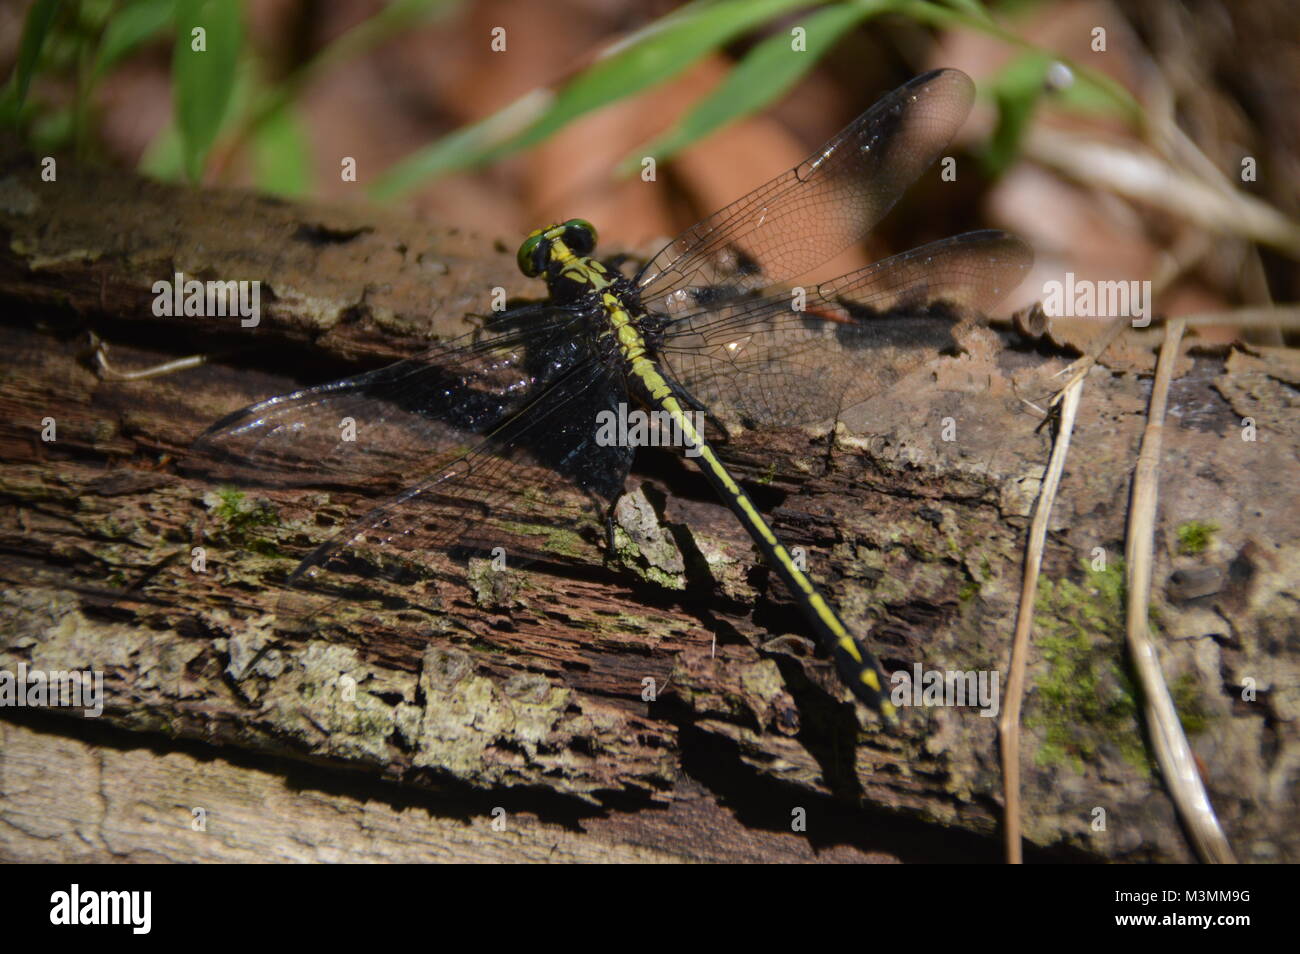 Un verde y negro Dragonfly en registro con algunos greenage en el fondo de la imagen. Foto de stock